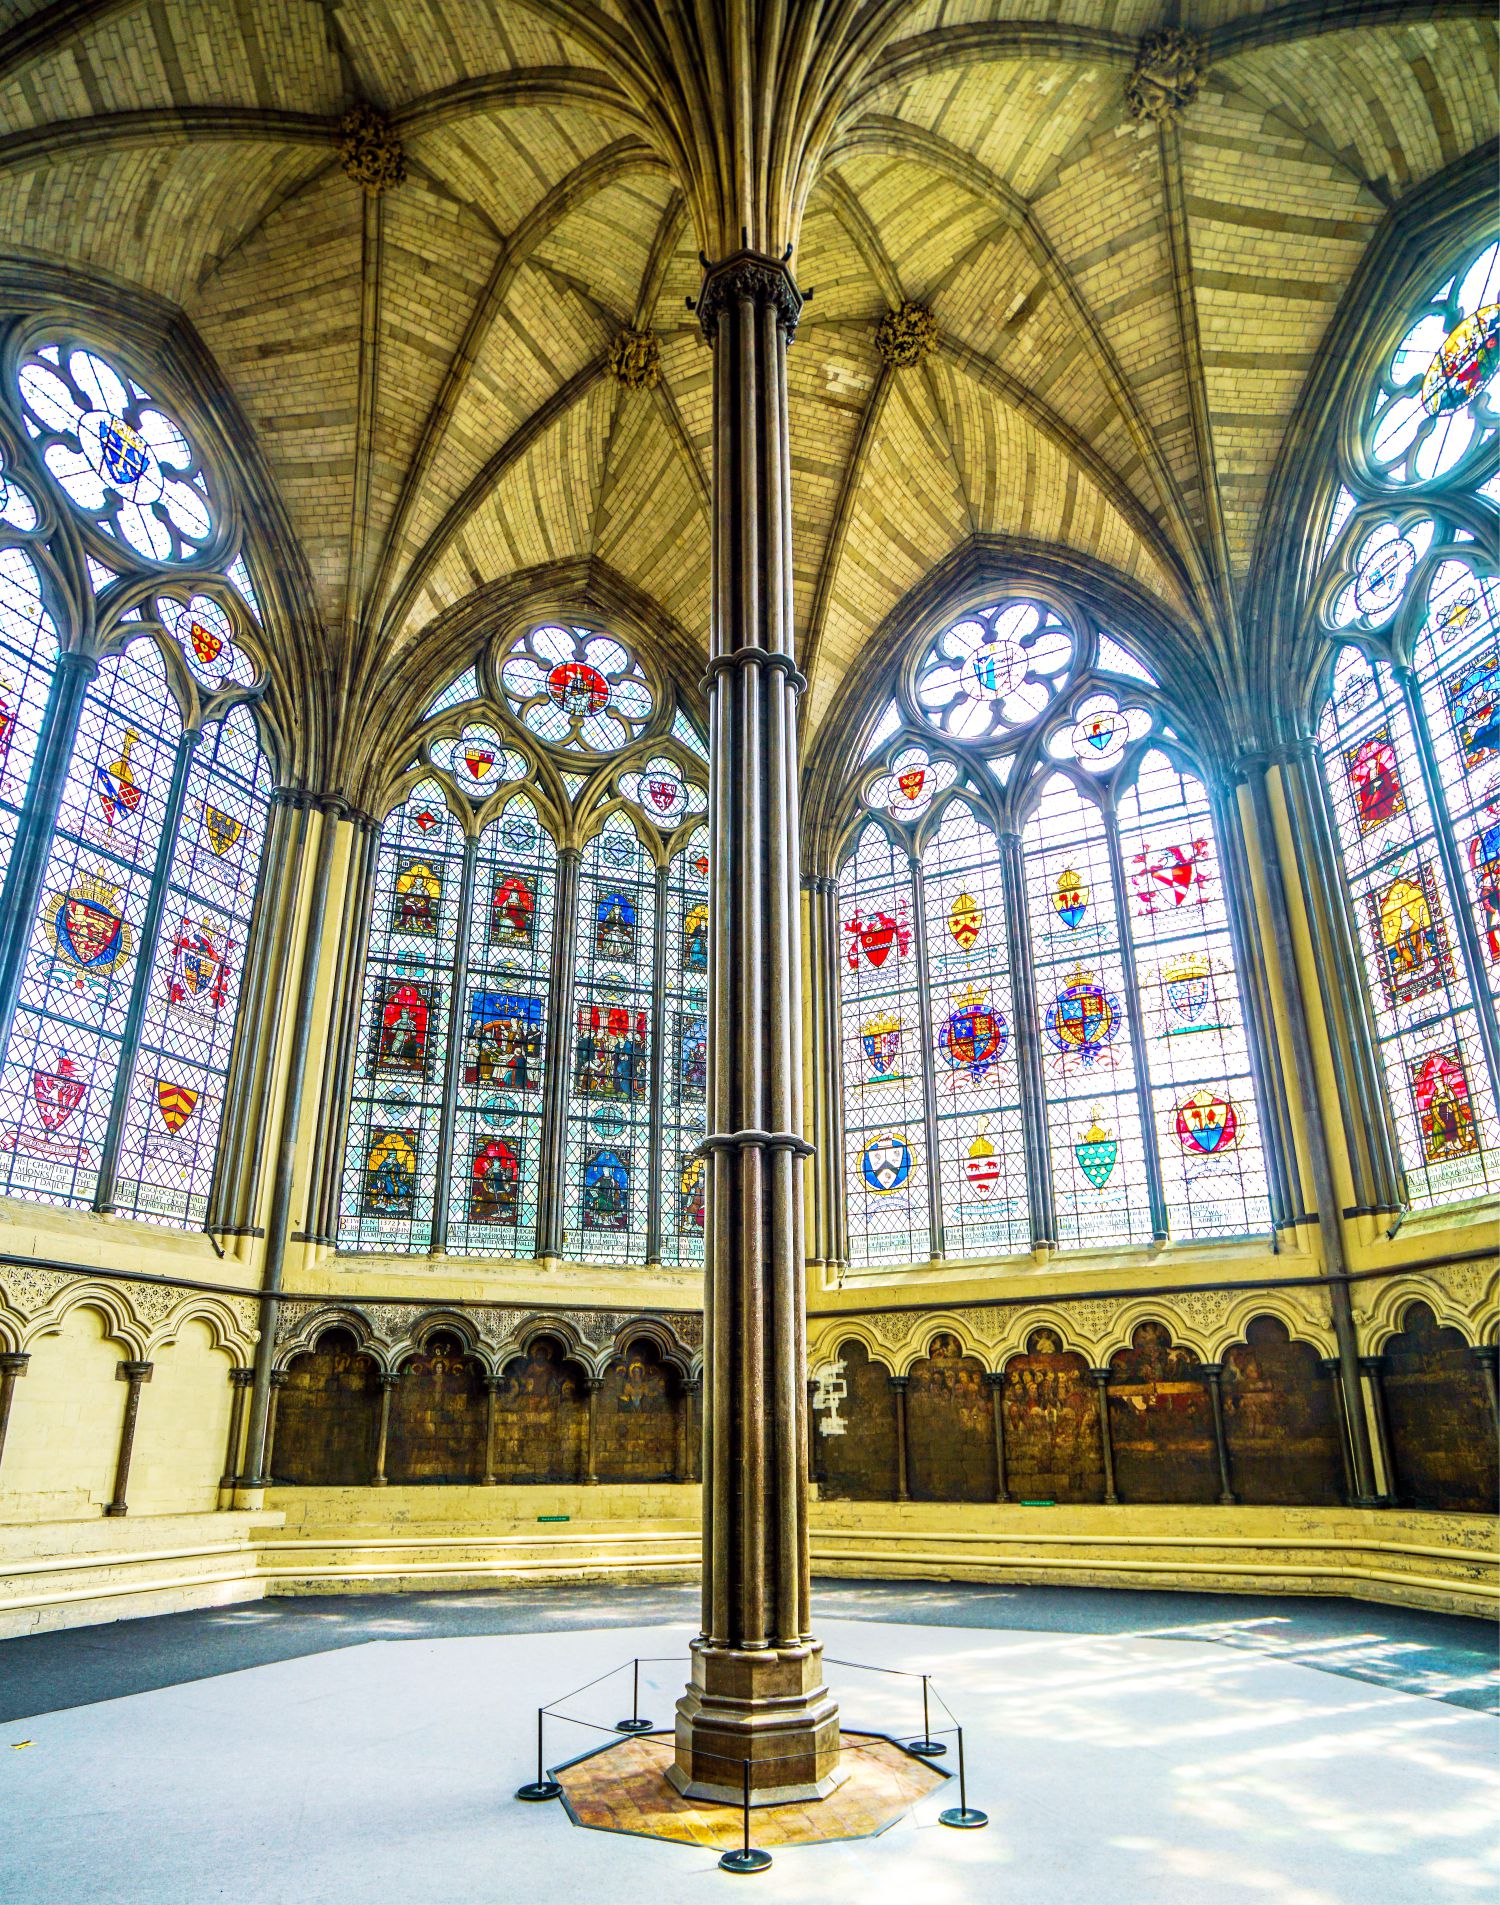 Cận cảnh Tu viện Westminster nơi diễn ra Lễ đăng quang của Vua Charles III - Ảnh 11.